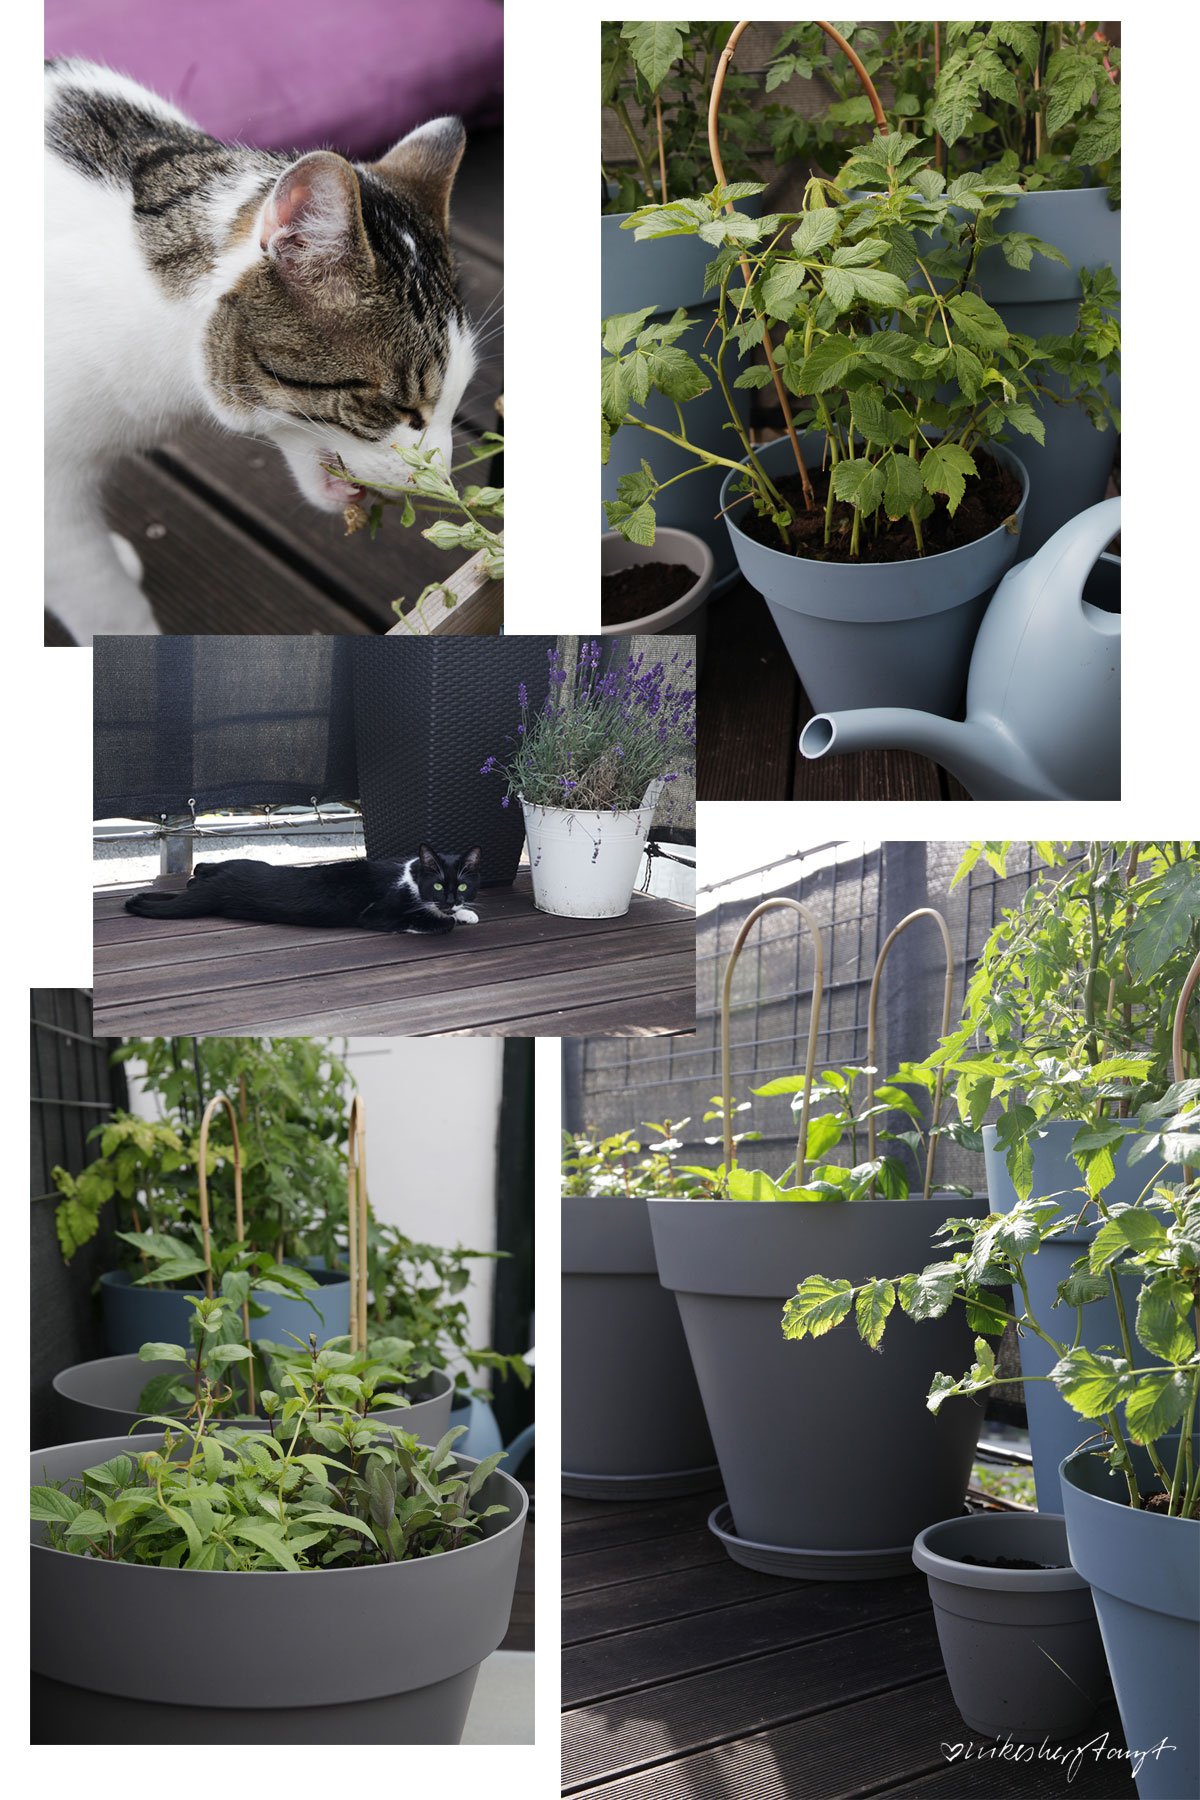 sonnendeck, urban gardening, tomaten, kräuter, pflanzen, dachterrasse, grüner daumen, blog, nikesherztanzt